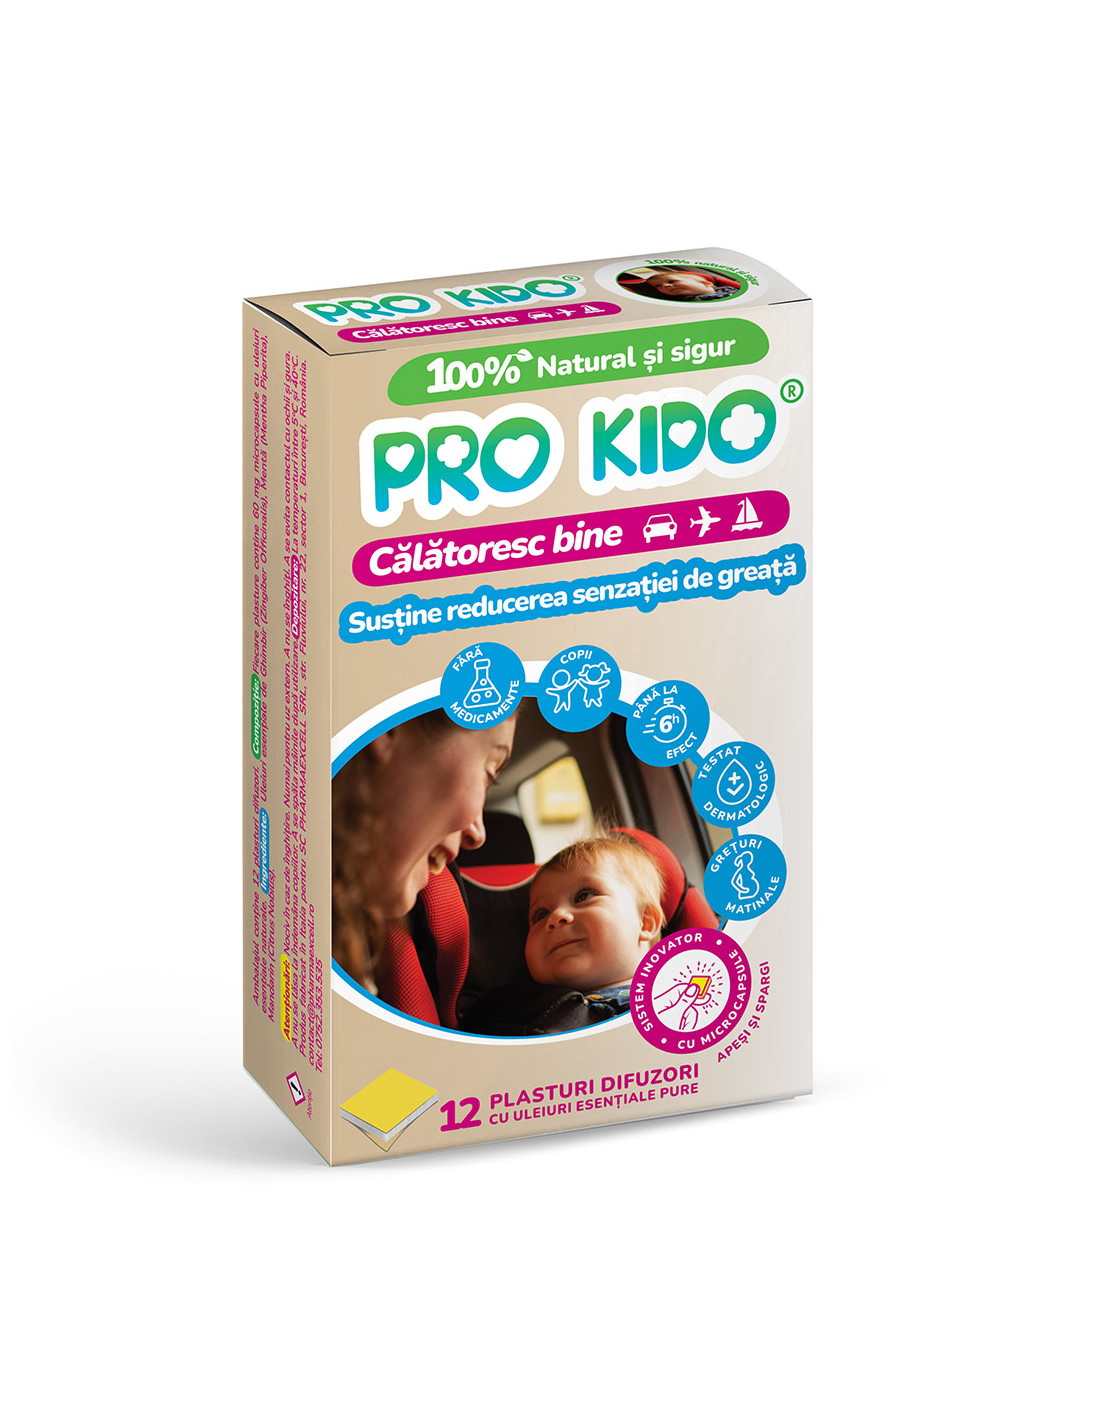 Plasturi naturali pentru rau de miscare pentru copii, 12 plasturi, Pro Kido  - GREATA - PHARMAEXCELL